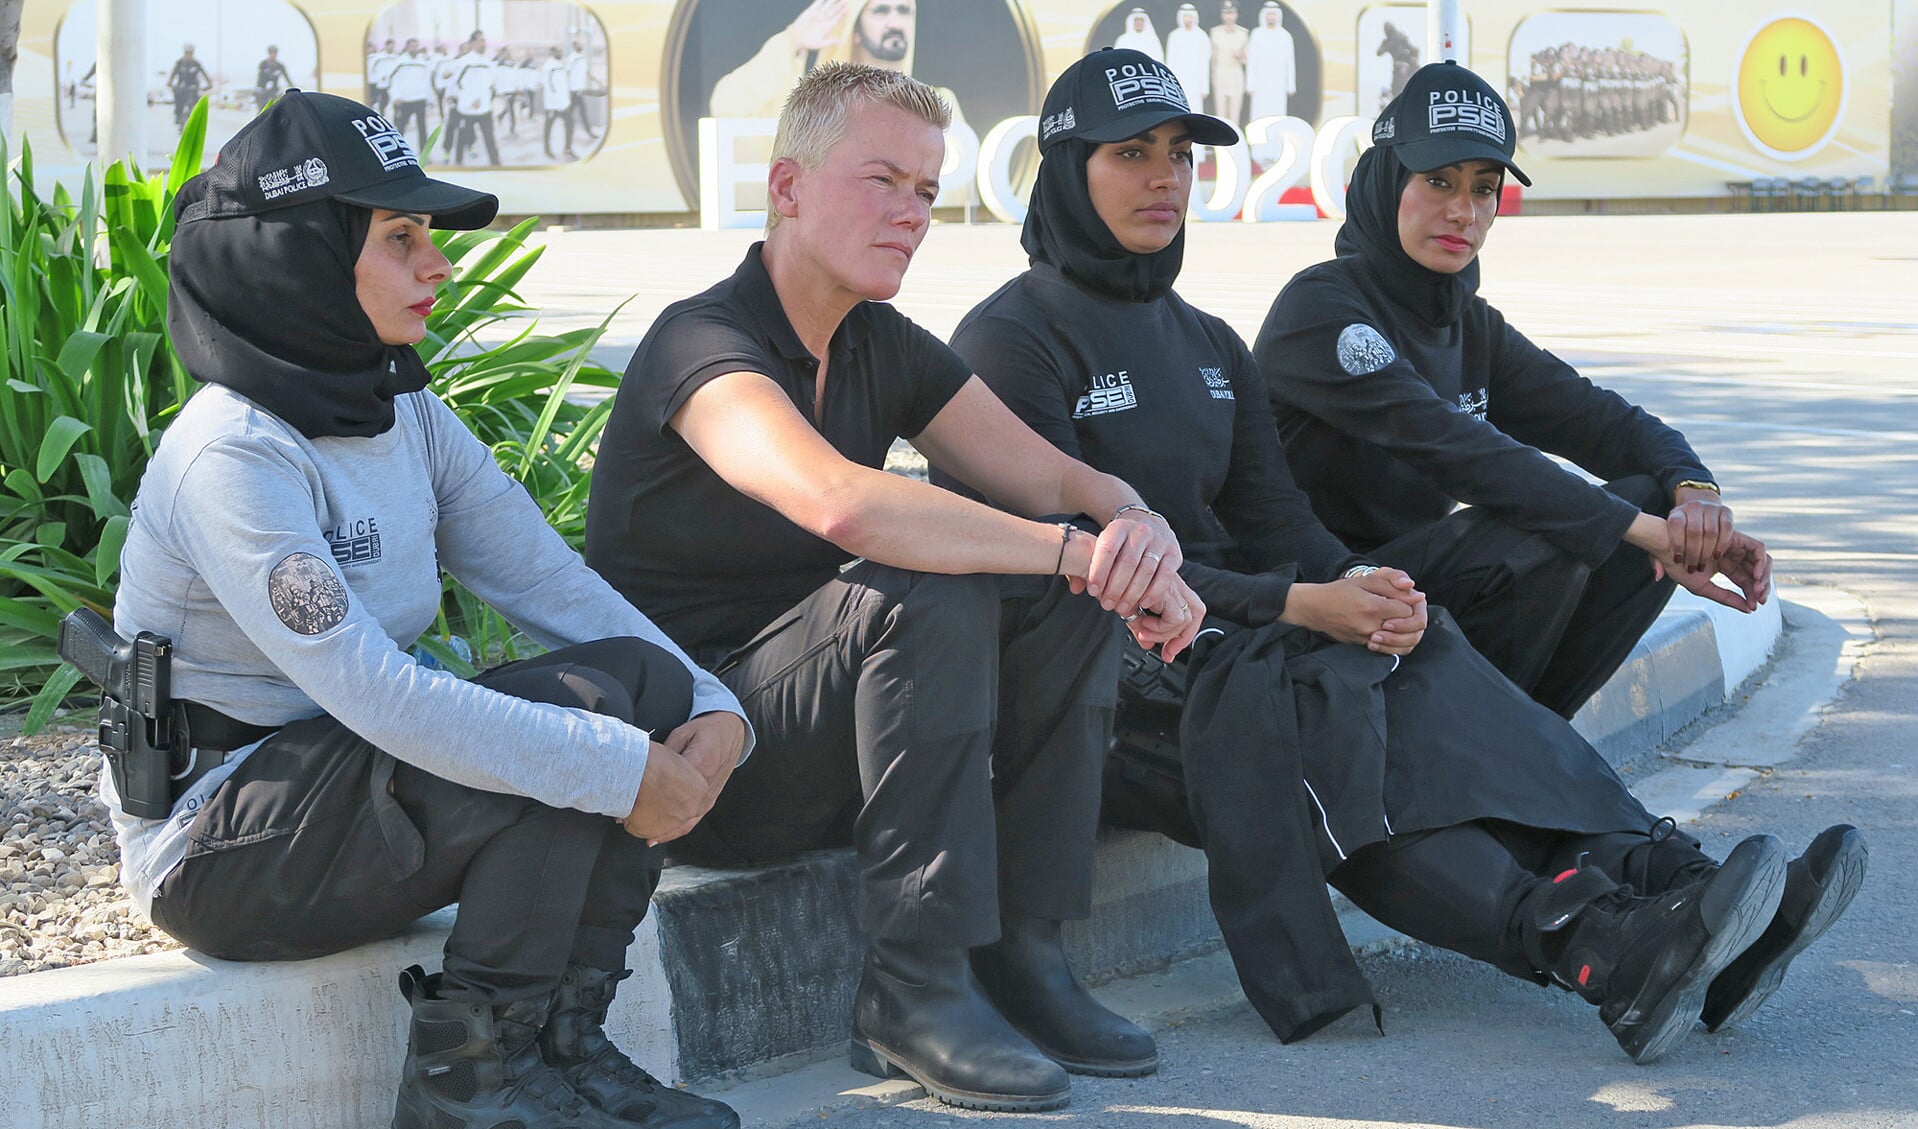 Politiewoordvoerder Ellie Lust (tweede van links) is een tv-persoonlijkheid geworden. Hier staat ze op de foto met collega’s uit Dubai.